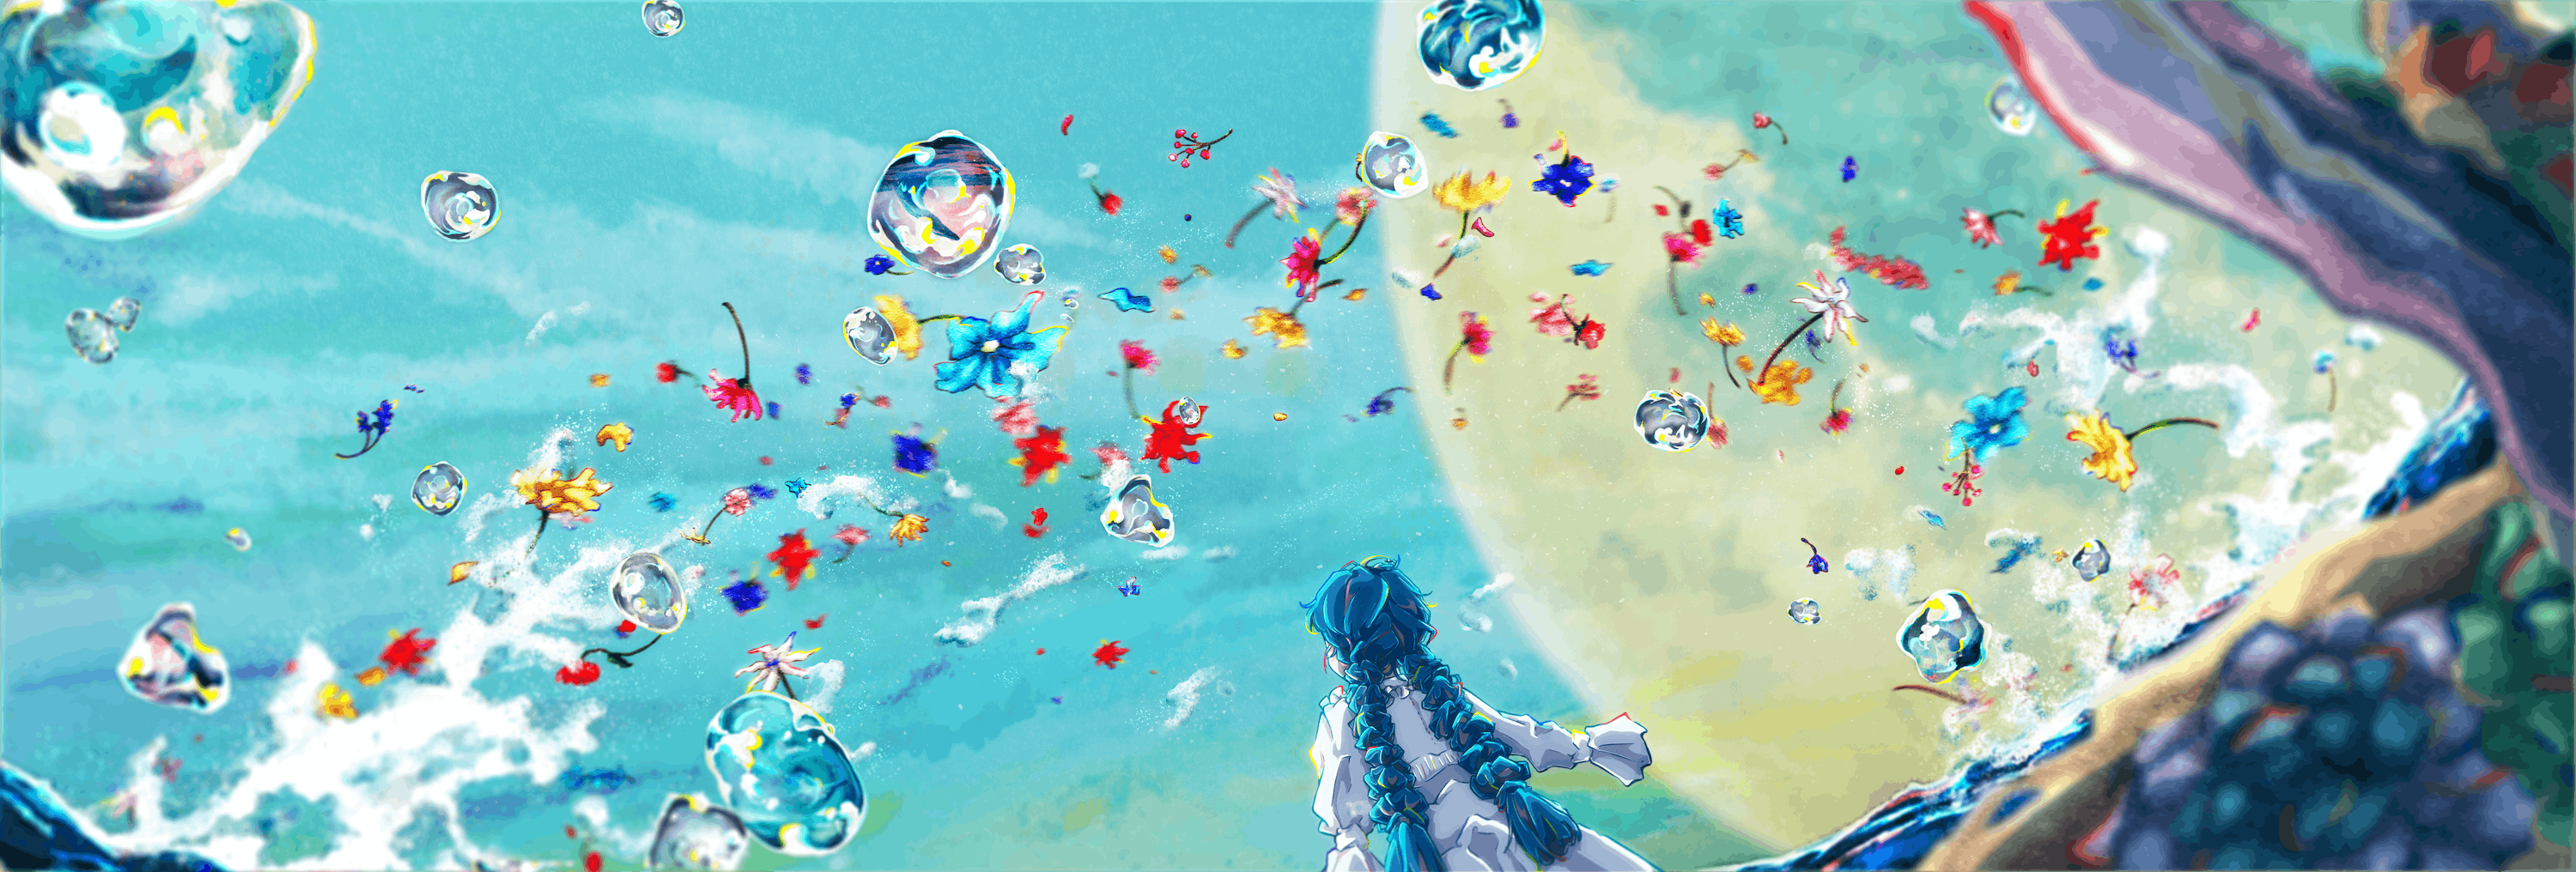 Digital Art Artwork Illustration Anime Flowers Women Anime Girls Abstract Bubbles Long Hair Blue Hai 3000x1016